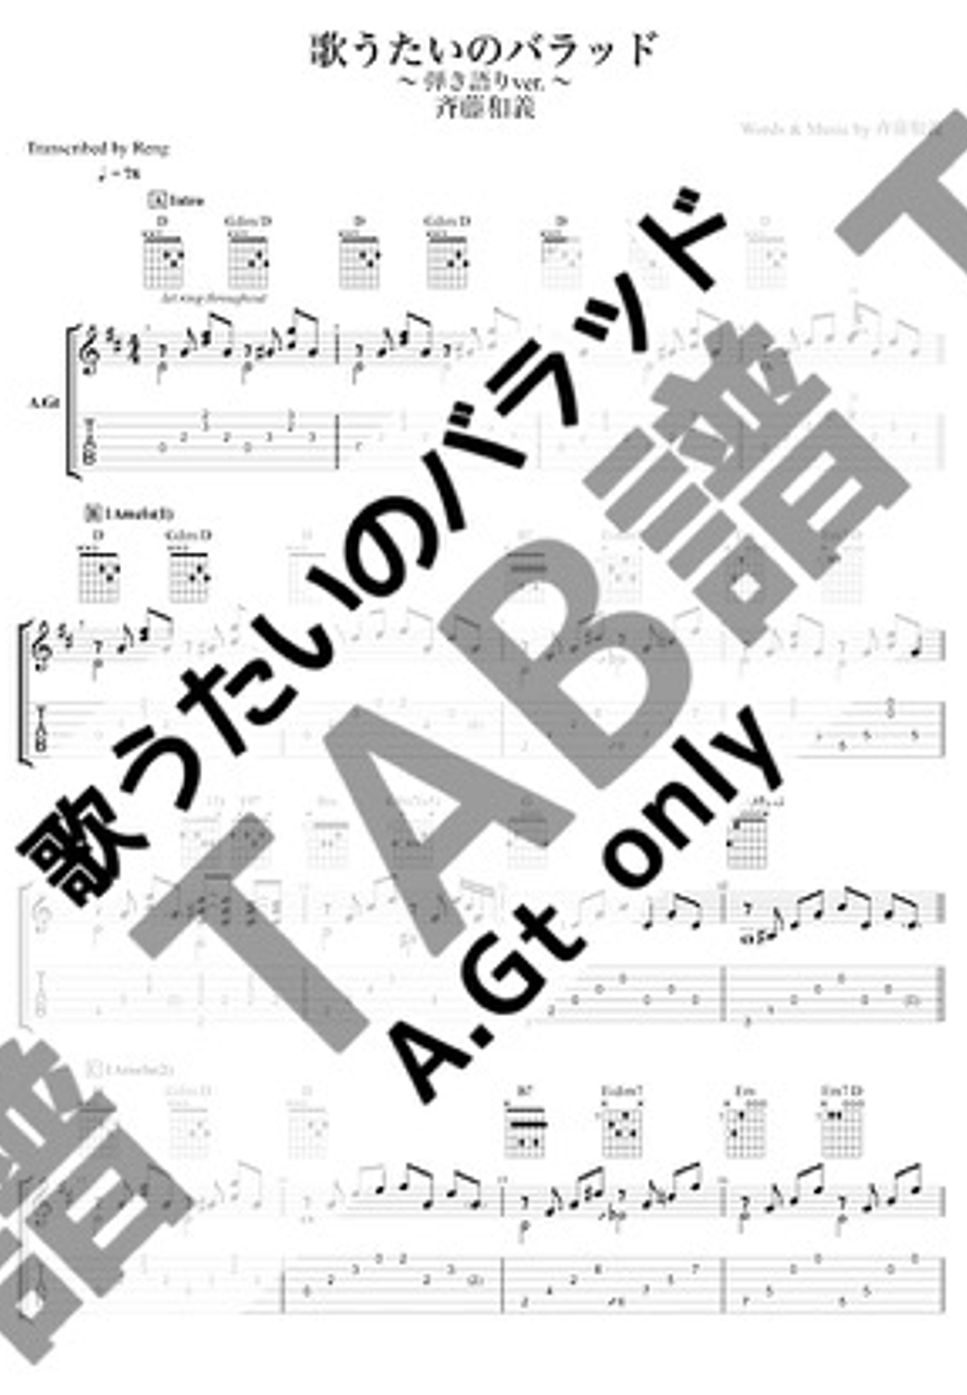 斉藤 和義 - 歌うたいのバラッド (A.Gt only / 弾き語り) by Reng